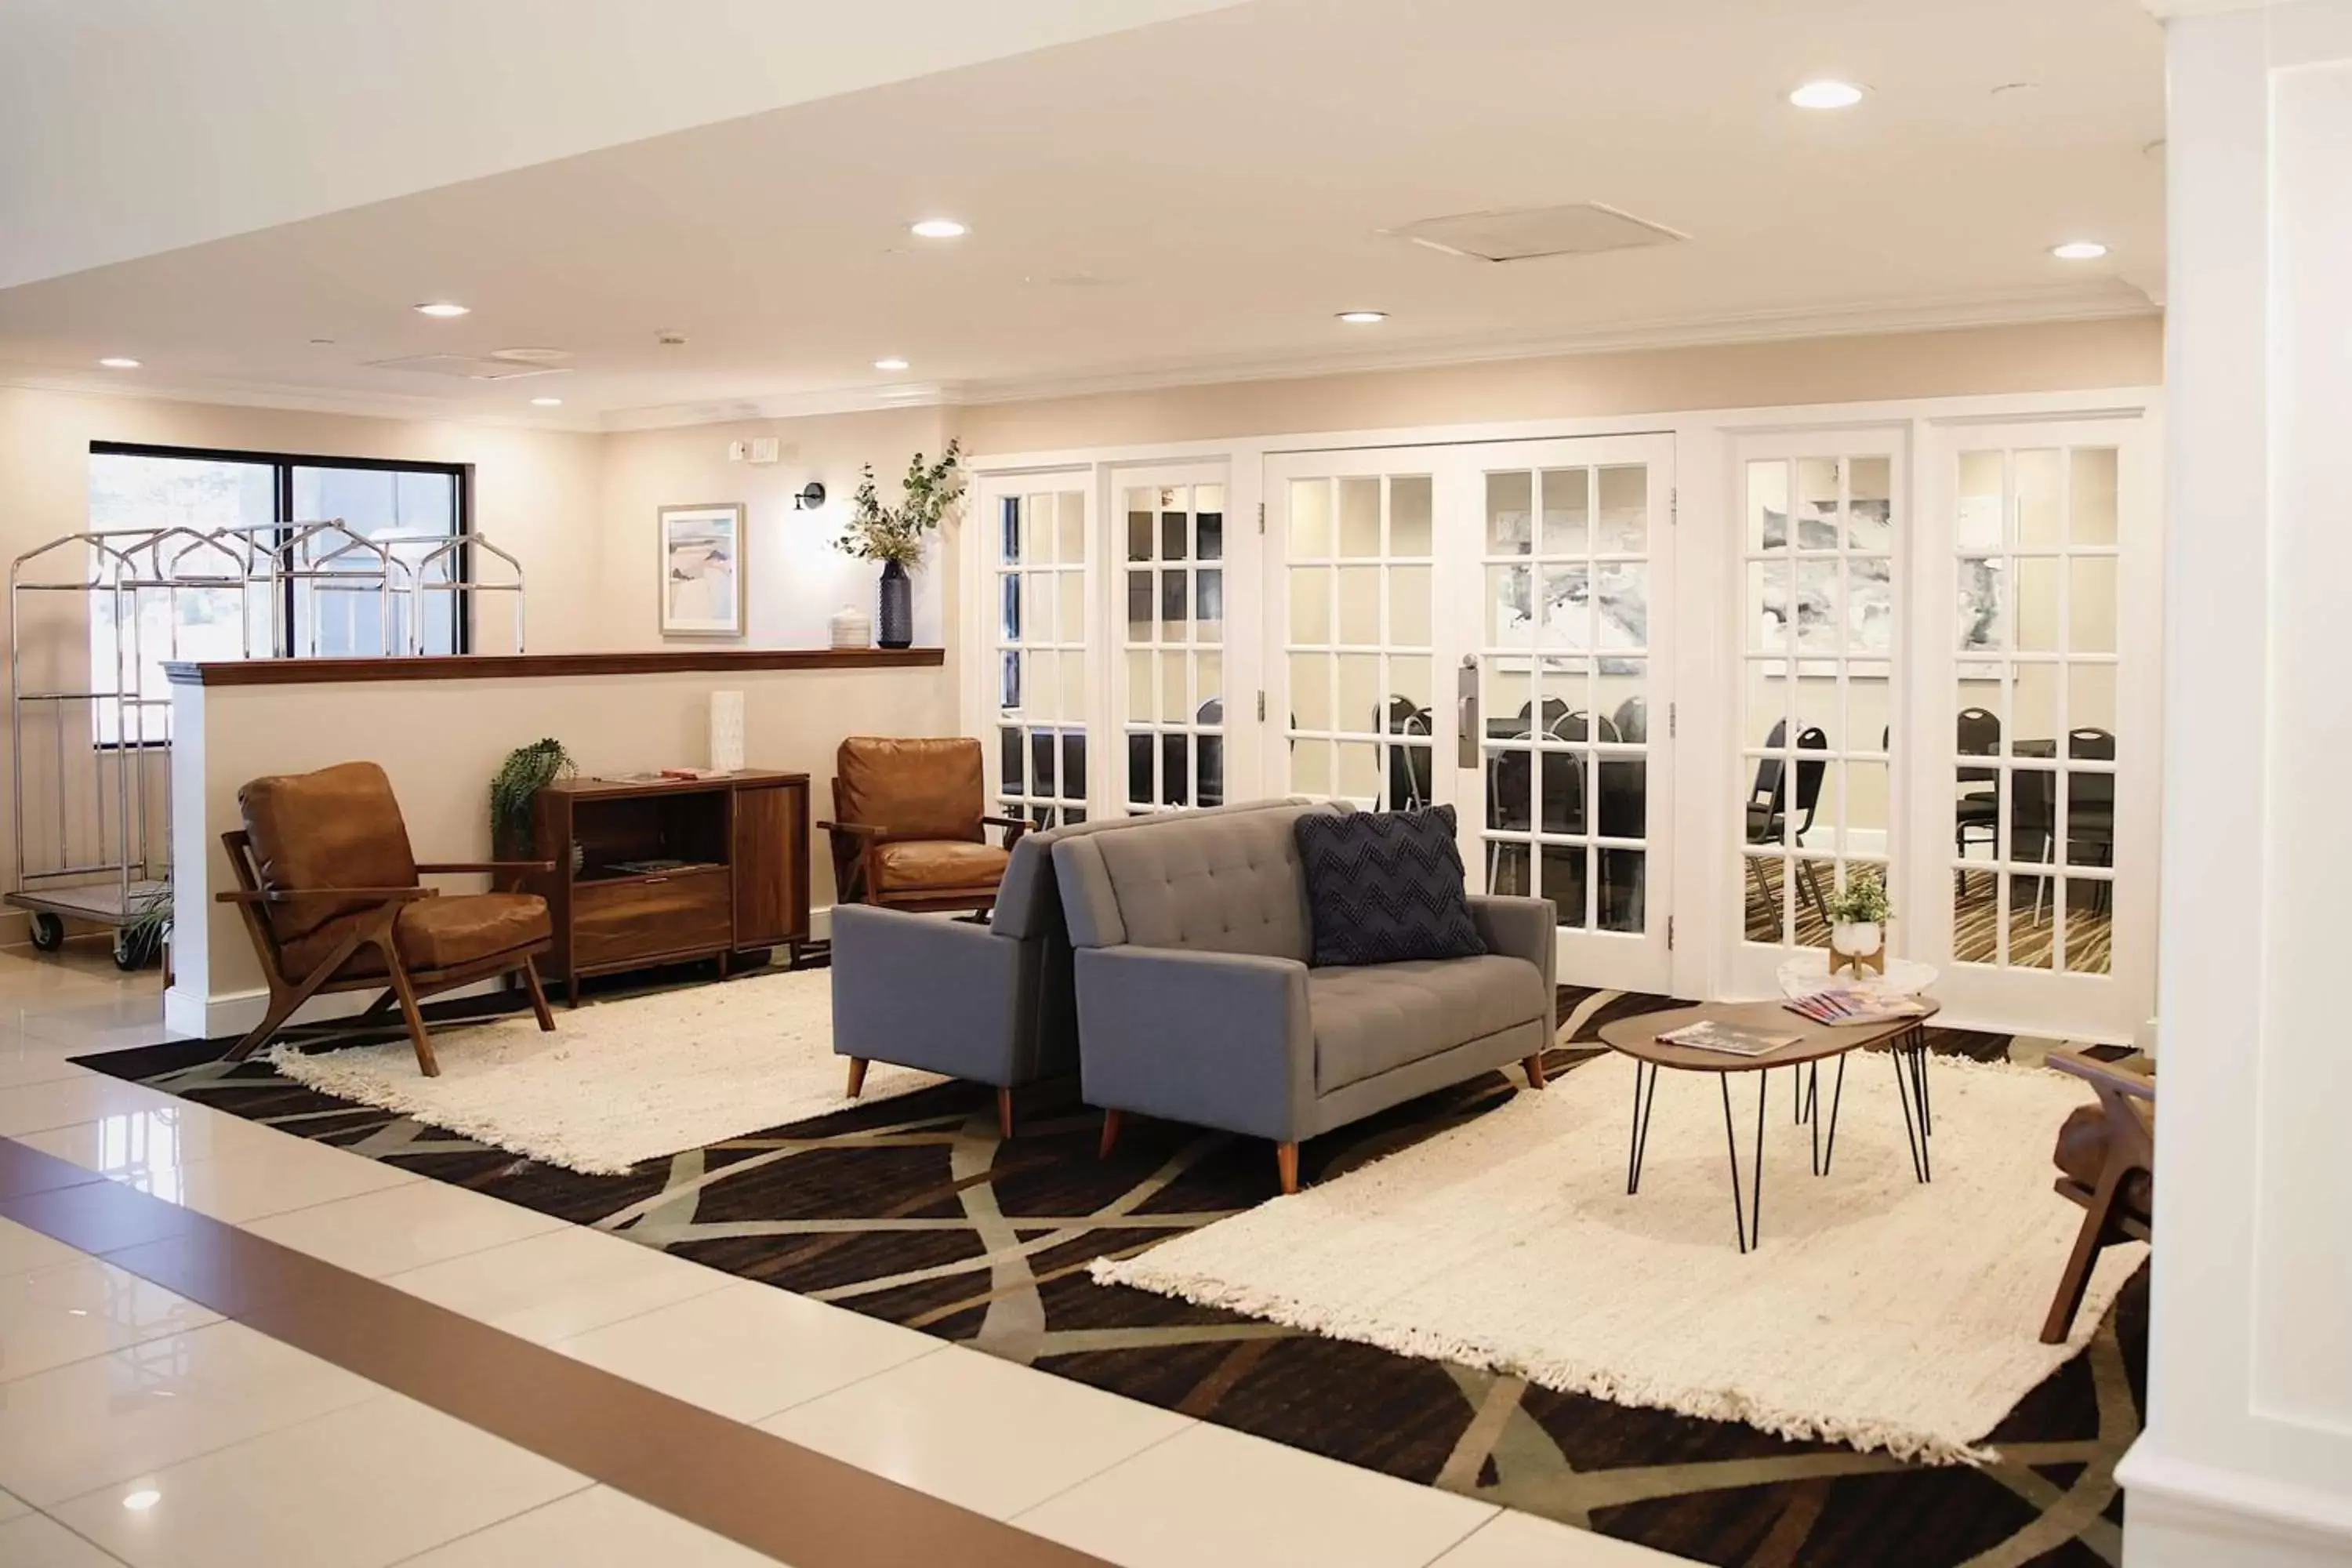 Lobby or reception, Lobby/Reception in Baymont by Wyndham Jackson/Ridgeland